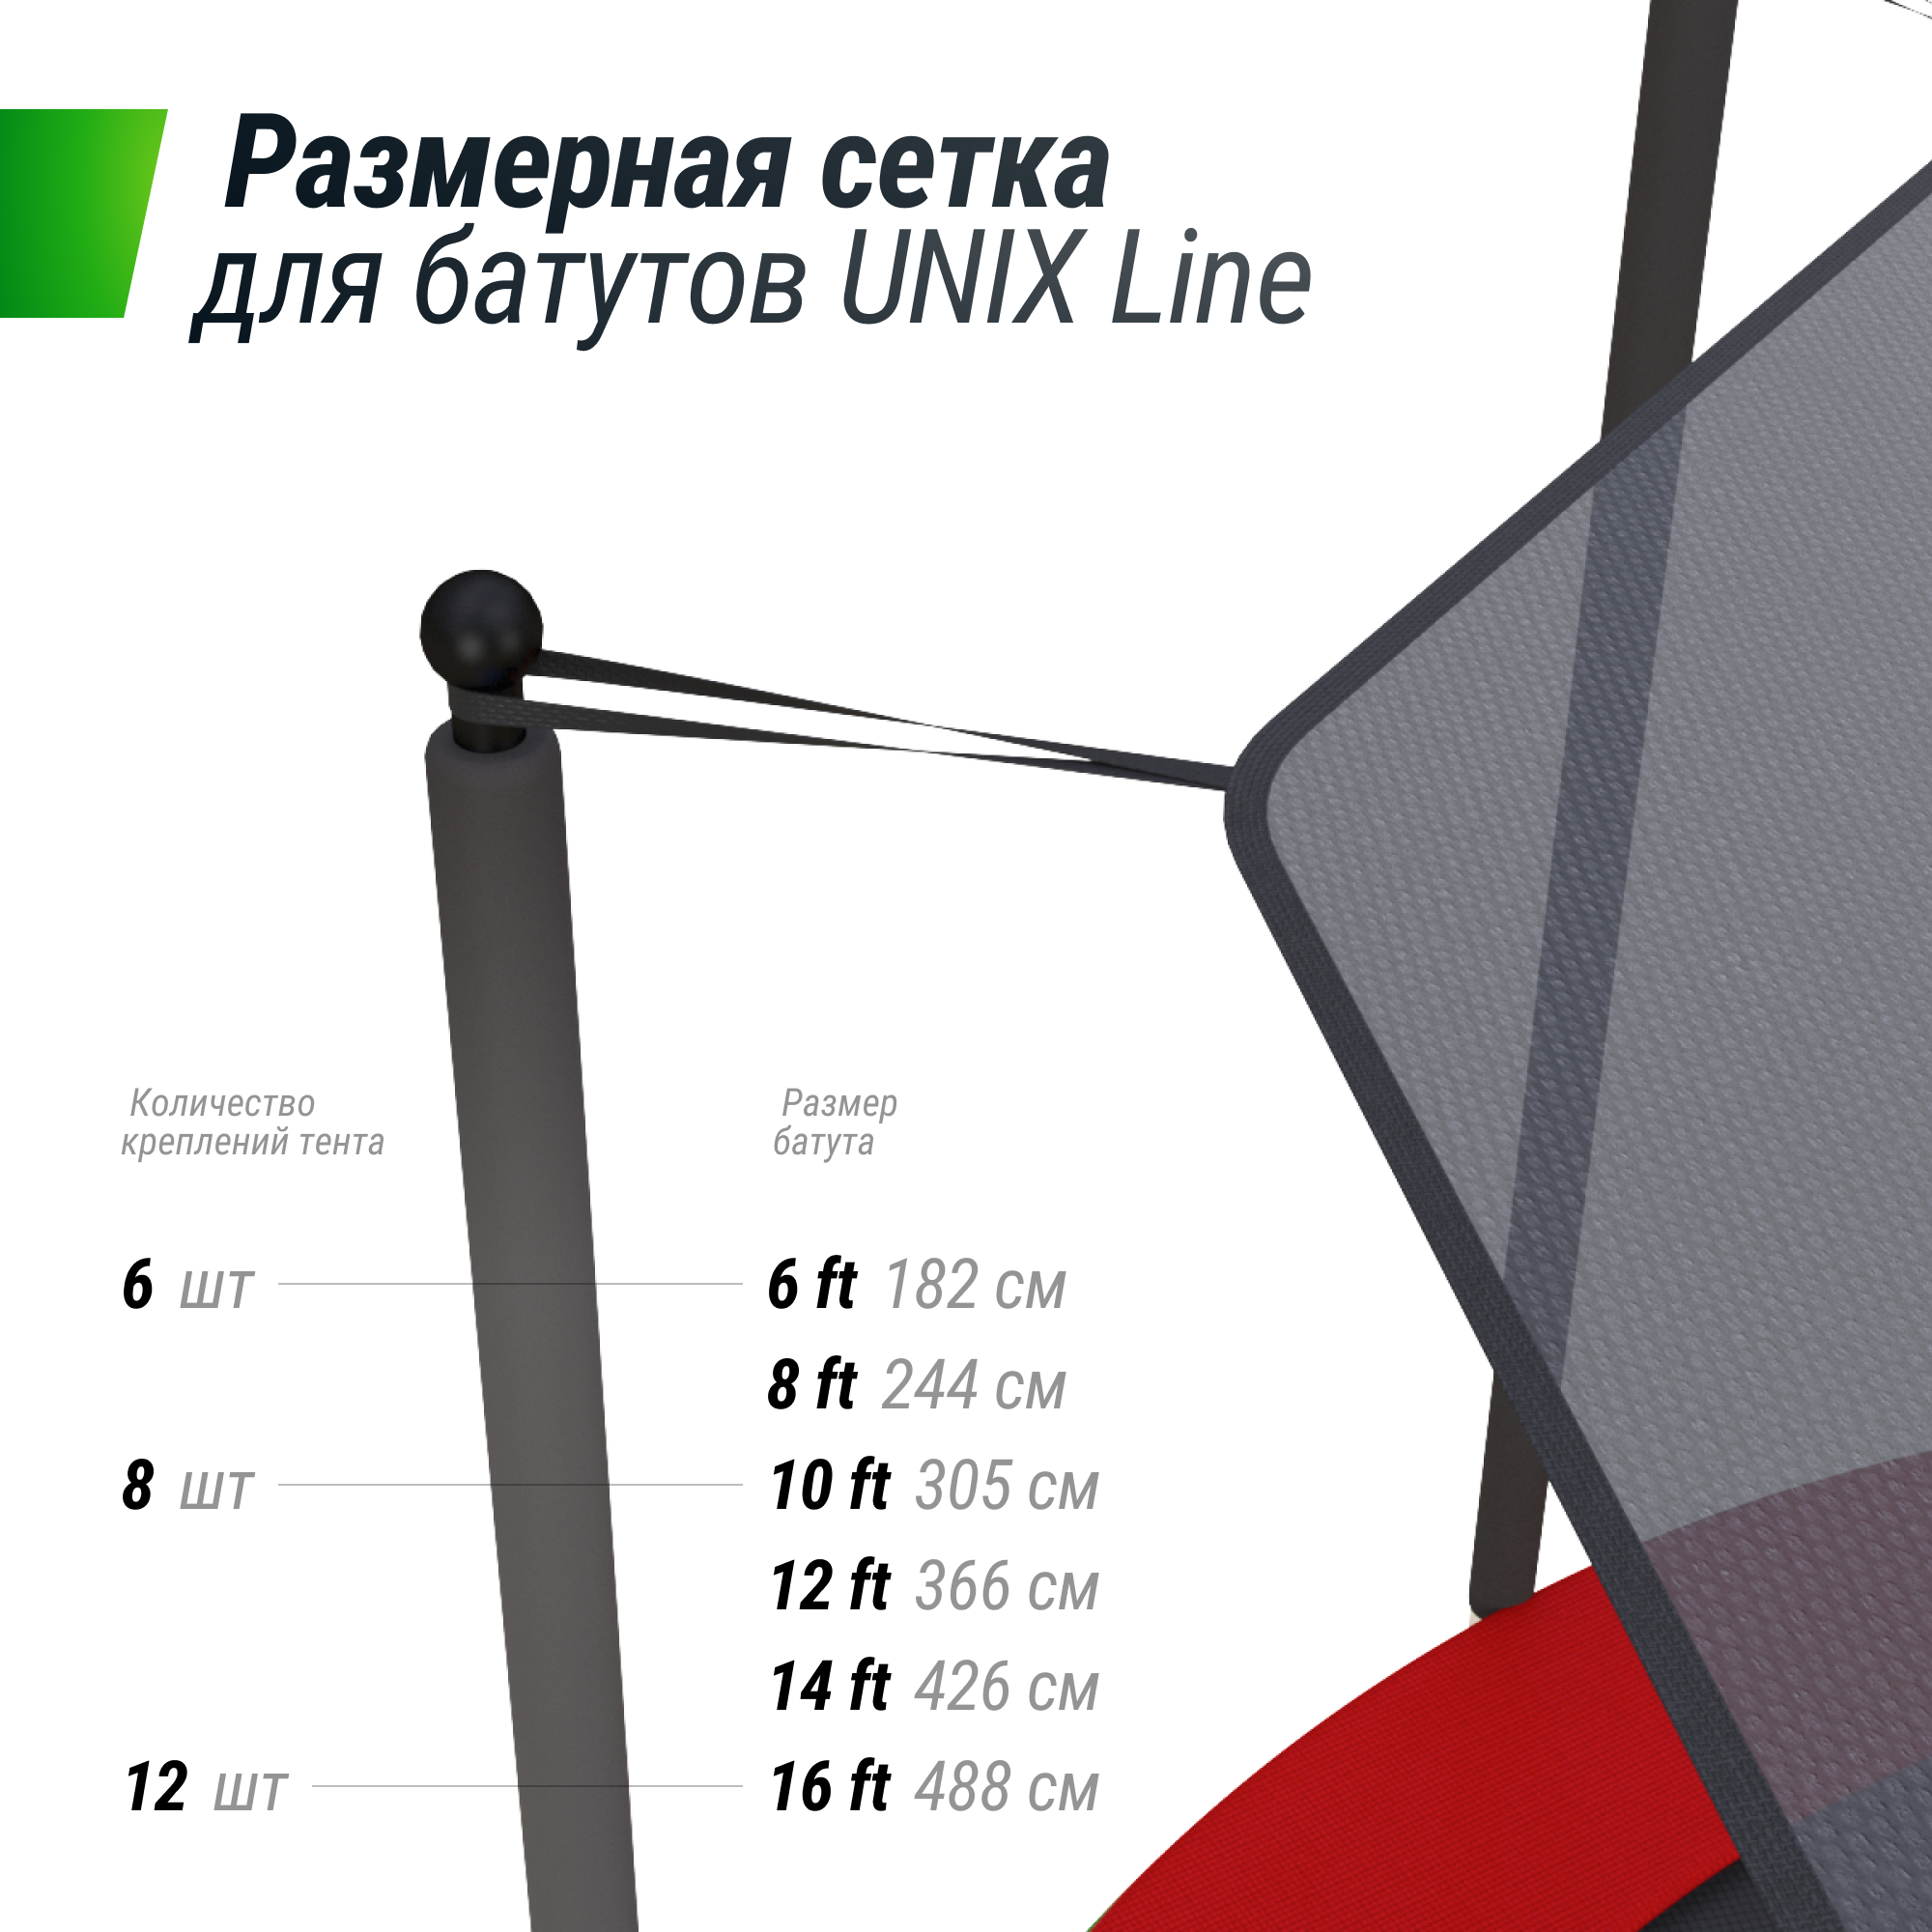 Солнцезащитный тент UNIX Line 488 см (16 ft) - 4 